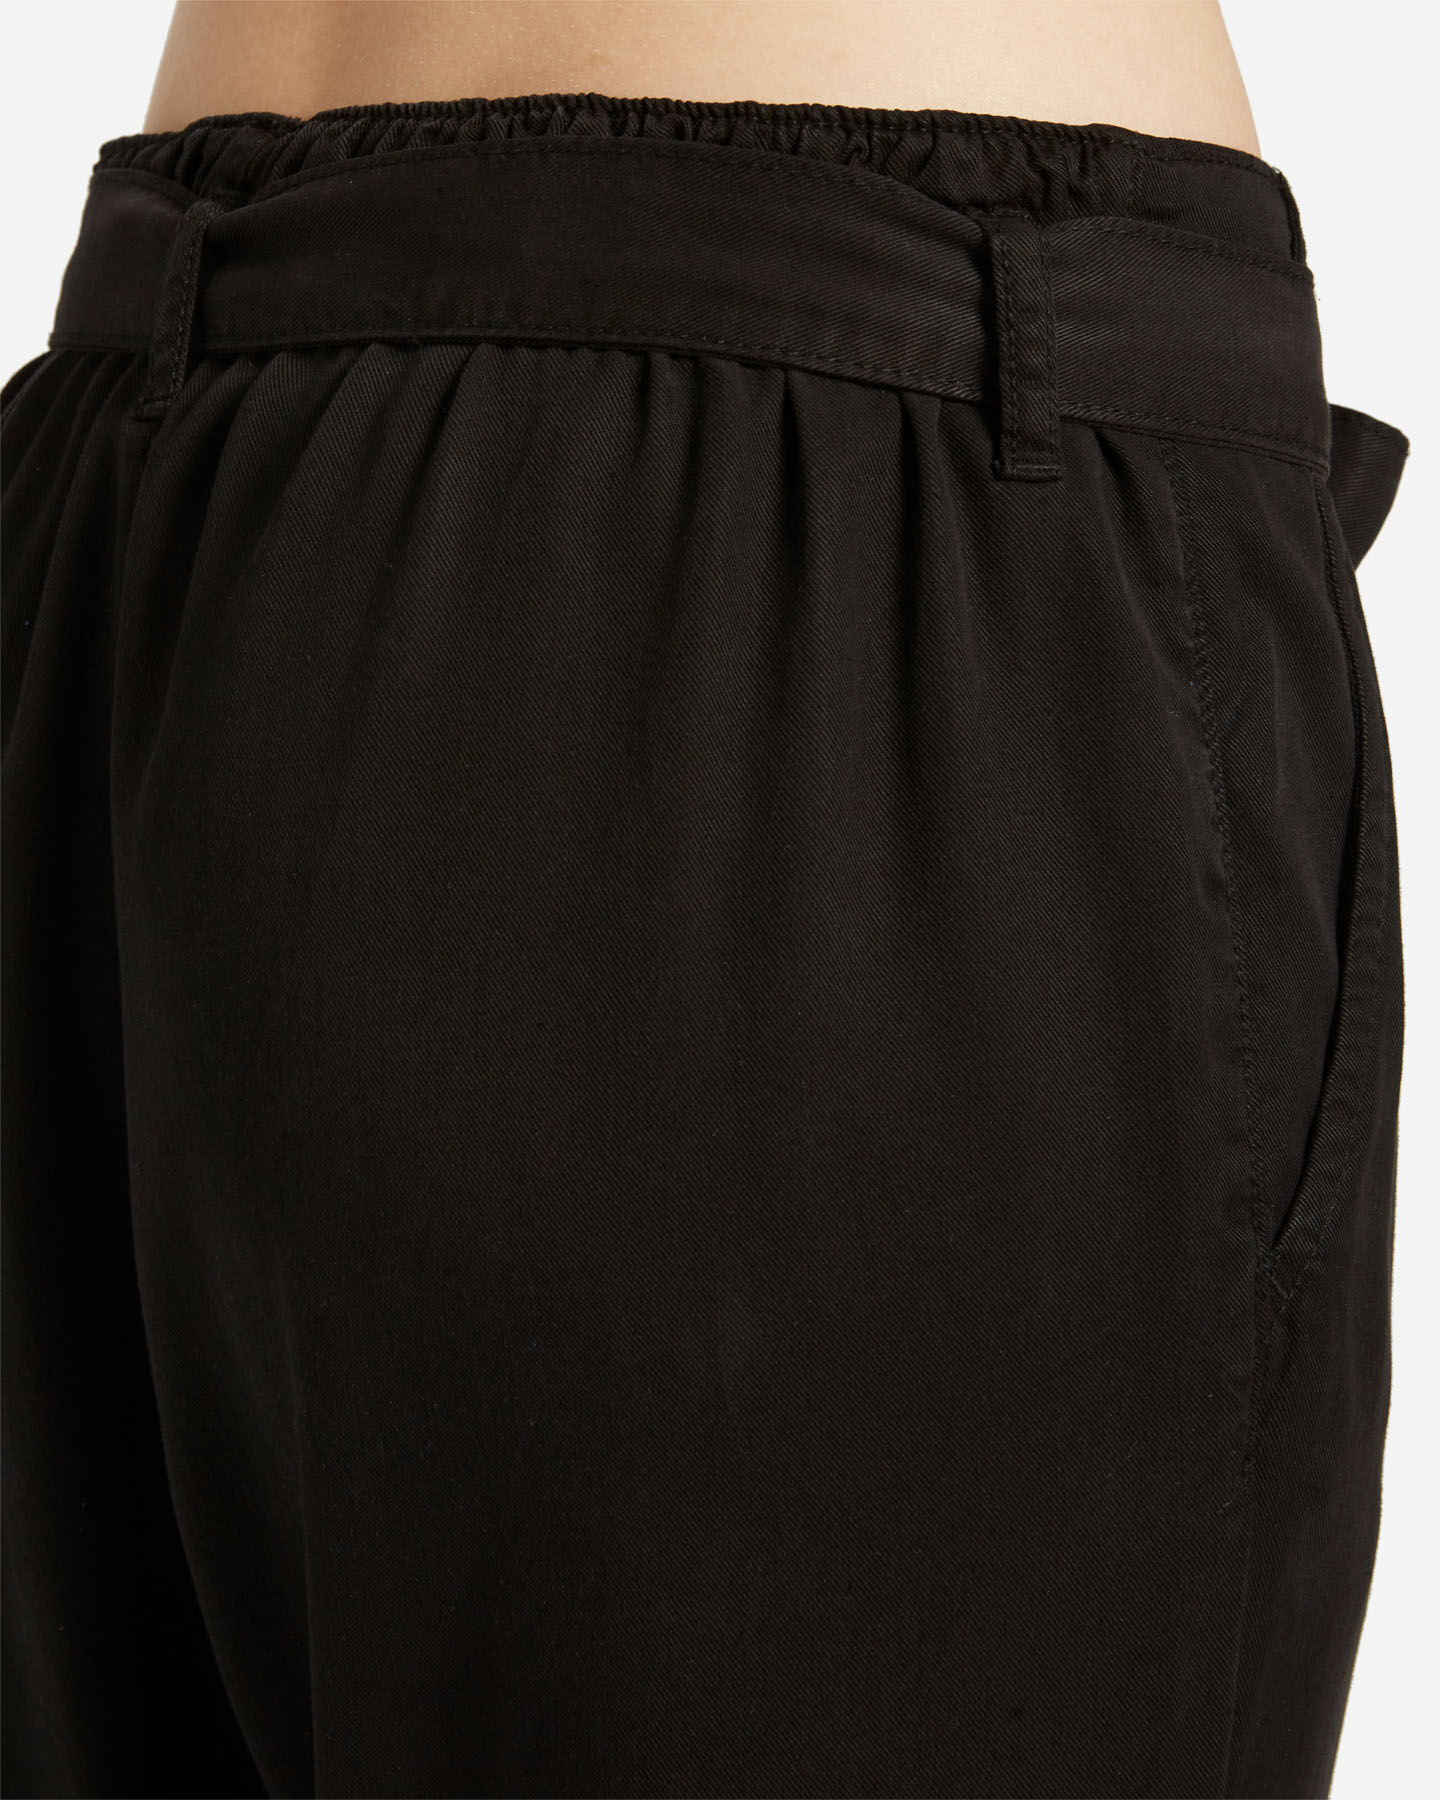  Pantalone DACK'S URBAN W S4129726|050|XS scatto 3